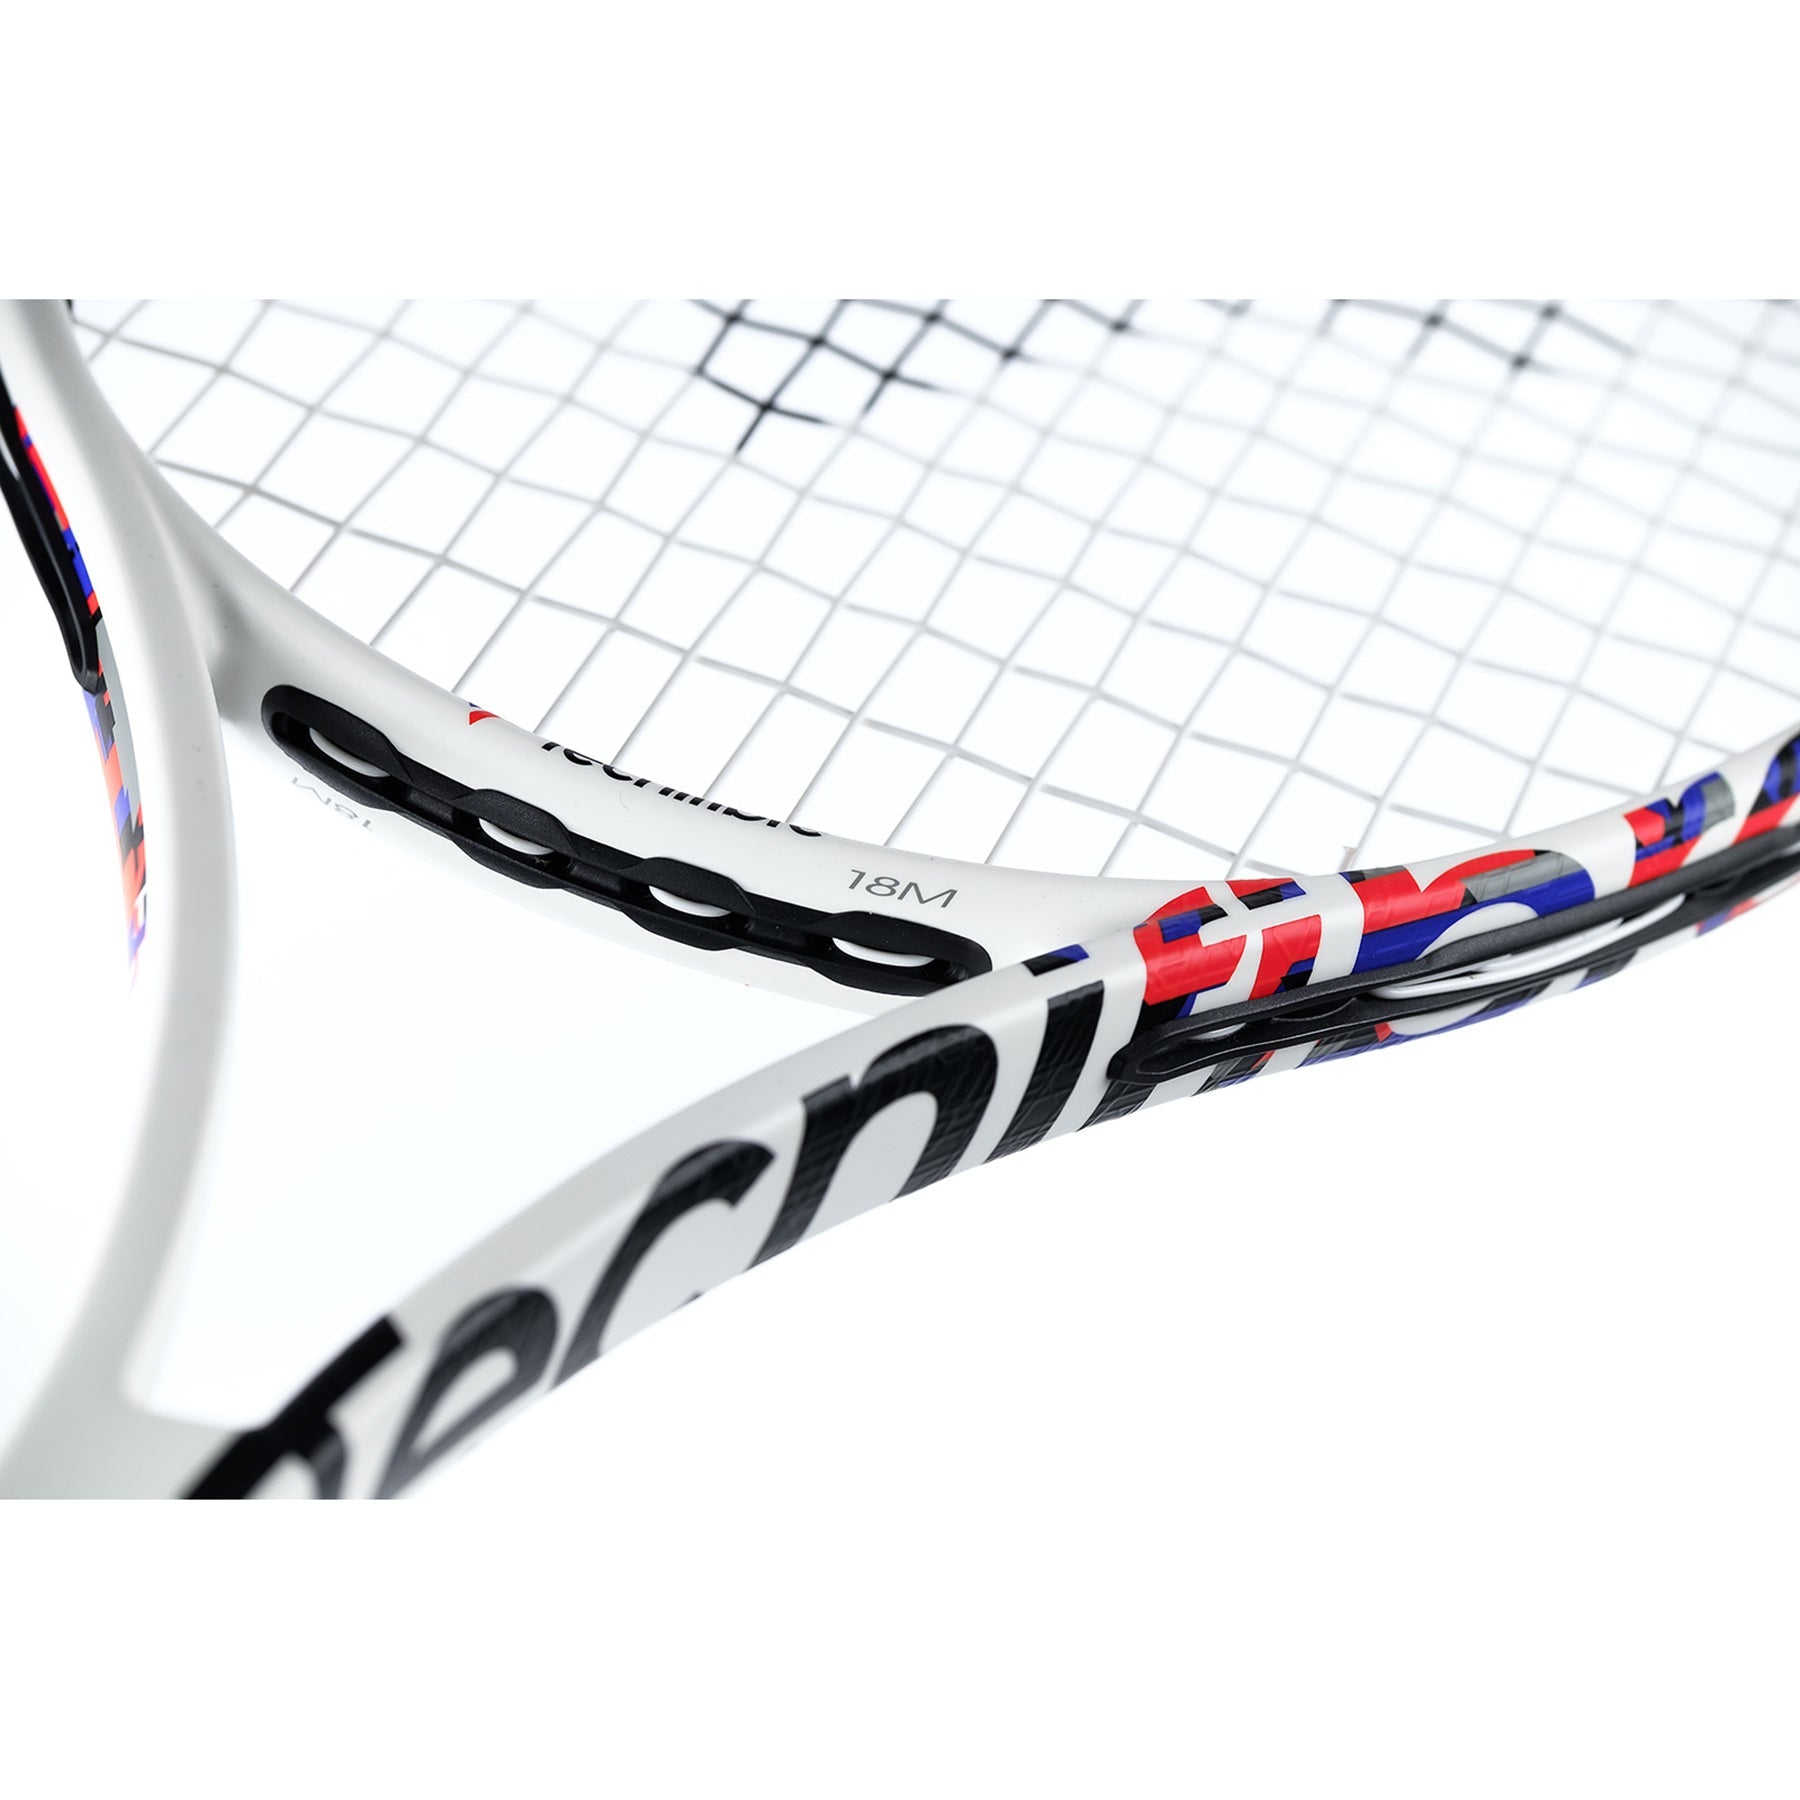 Tecnifibre TF-40 305 Tennis Racket - 16 x 19